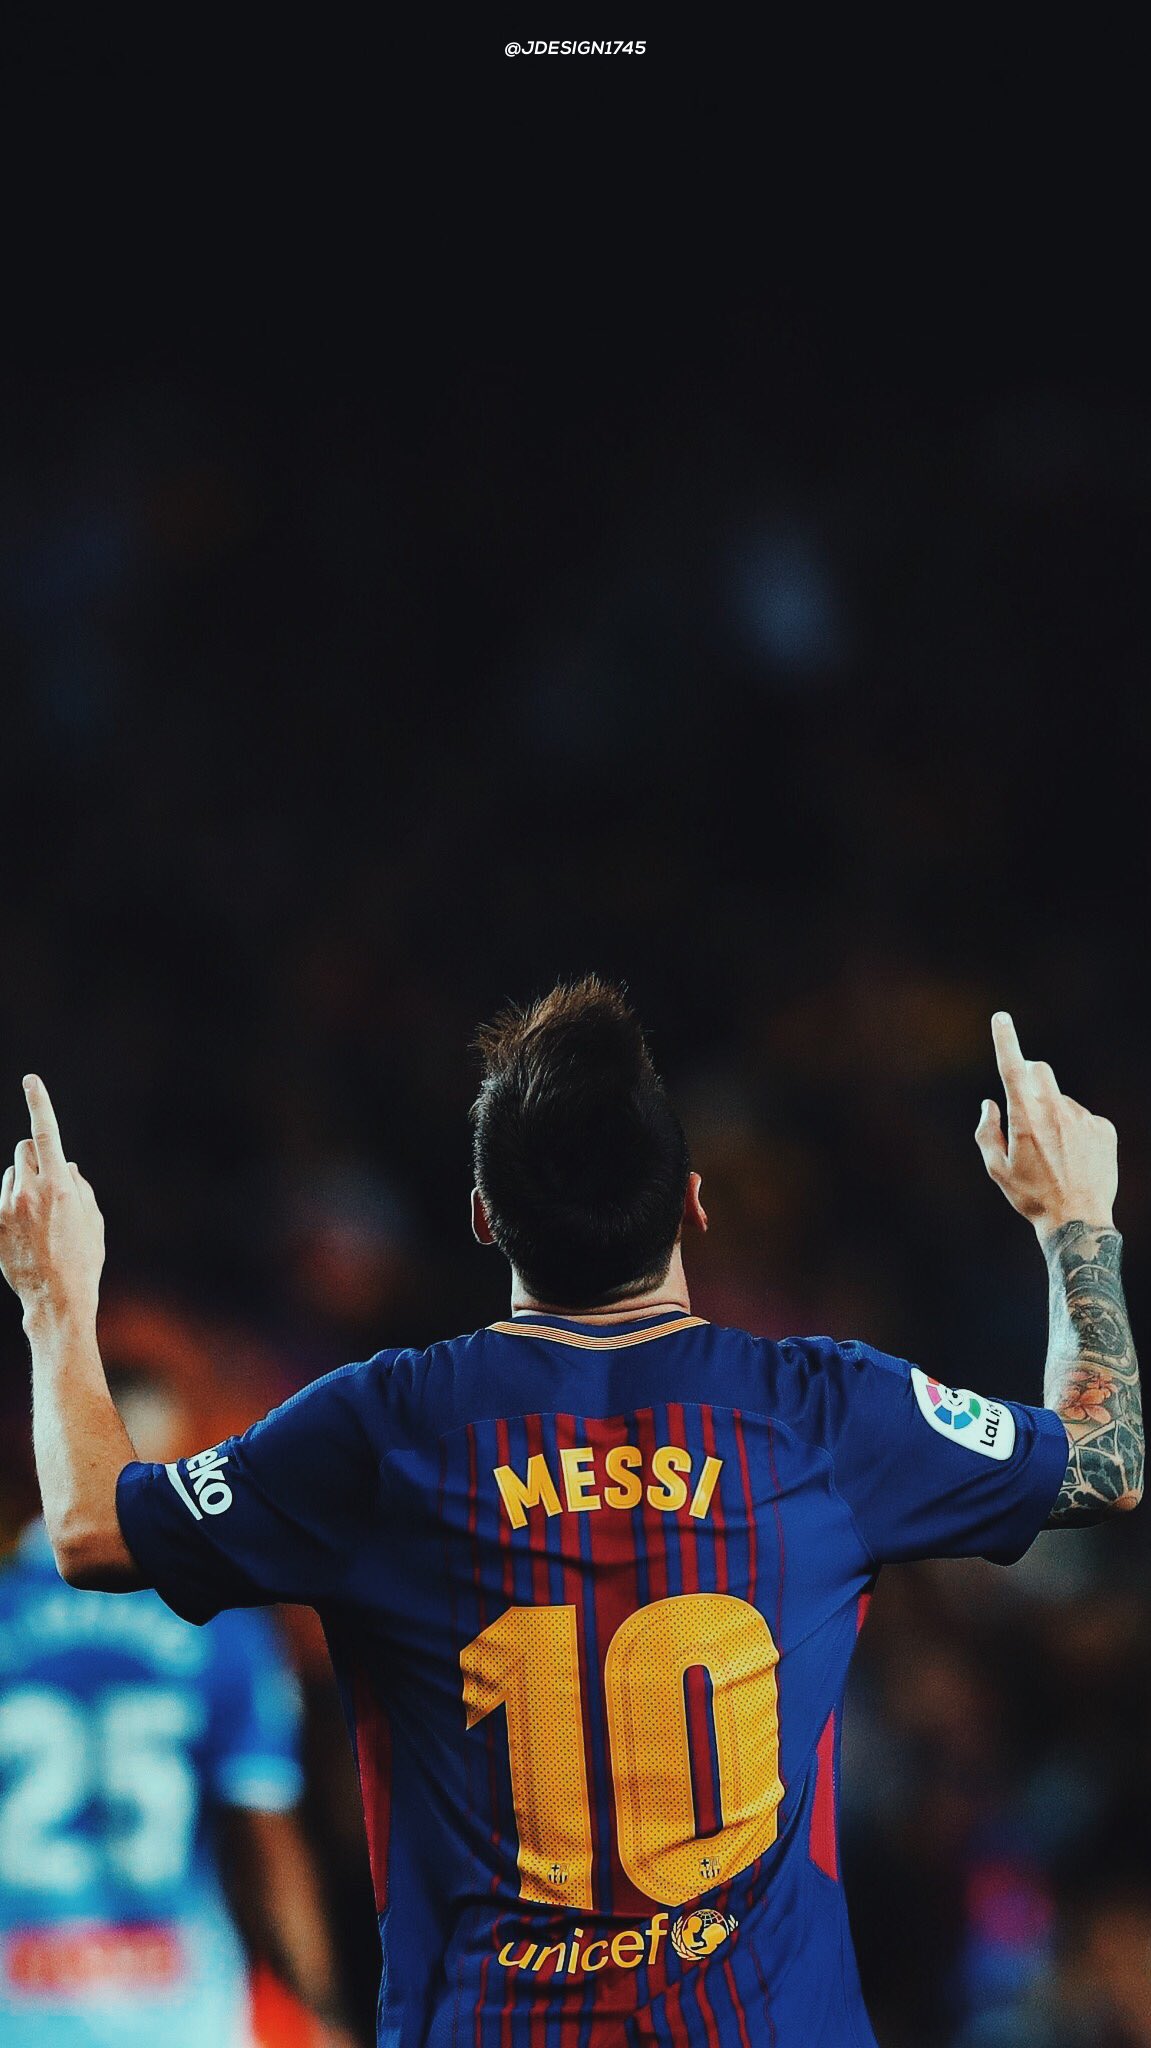 Là một fan cuồng nhiệt của FC Barcelona, bạn không thể bỏ qua màn hình khóa của mình mà không có hình nền Lionel Messi. Tải ngay những bức ảnh Messi lock screen độc đáo và đẹp mắt để luôn cảm thấy tự hào khi mở khóa điện thoại.